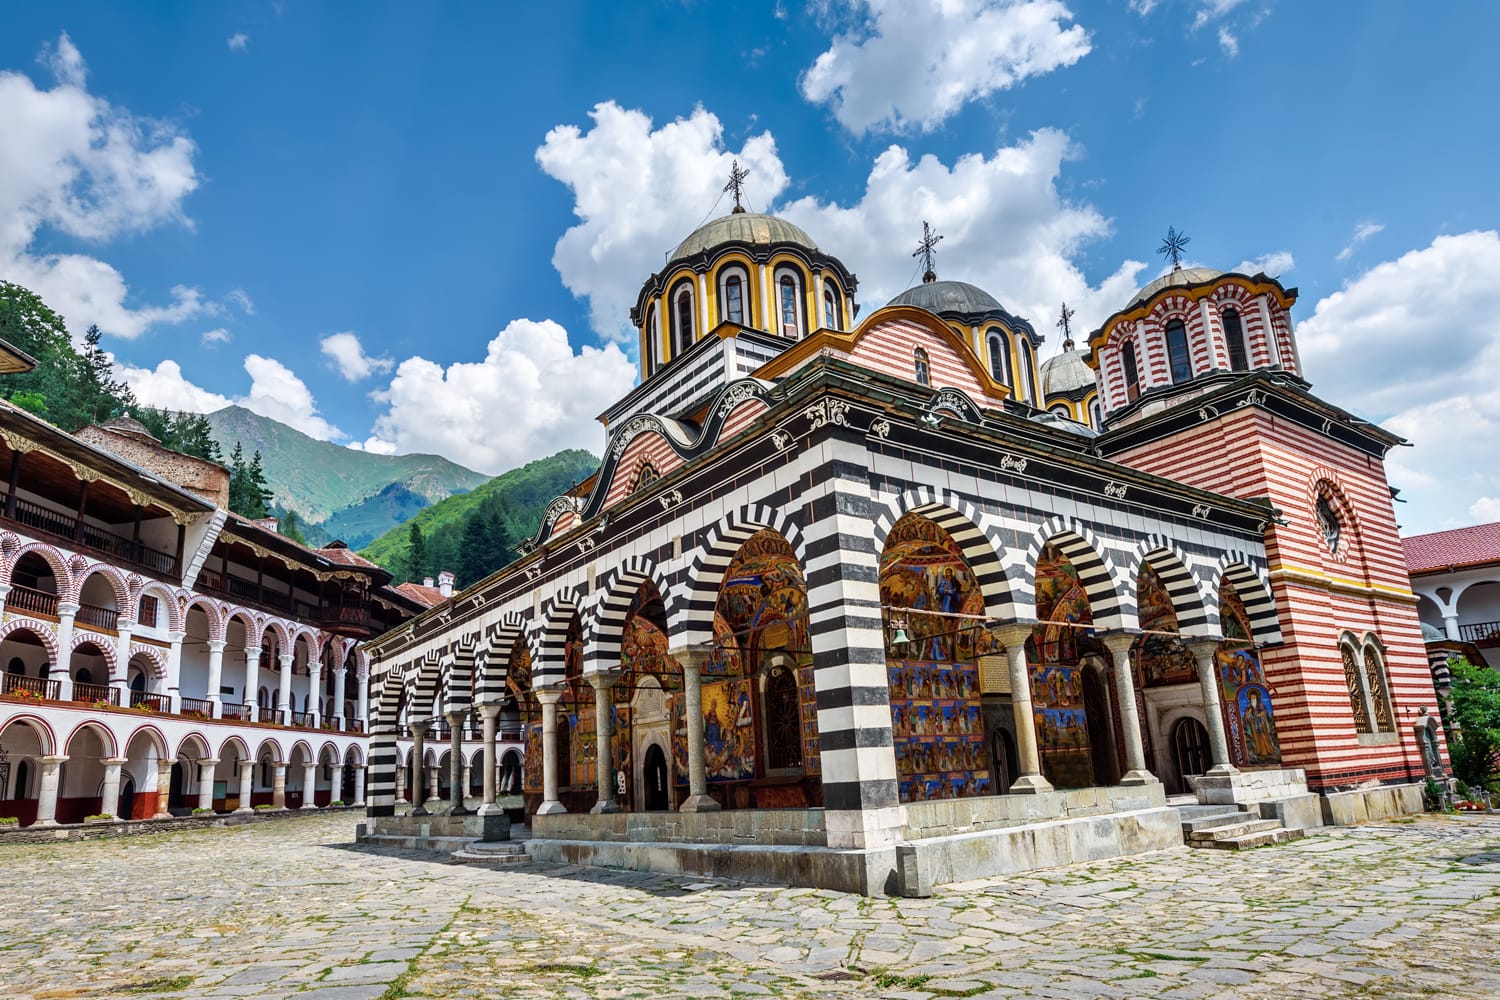 Μοναστήρι Rila, ένα διάσημο μοναστήρι στη Βουλγαρία.